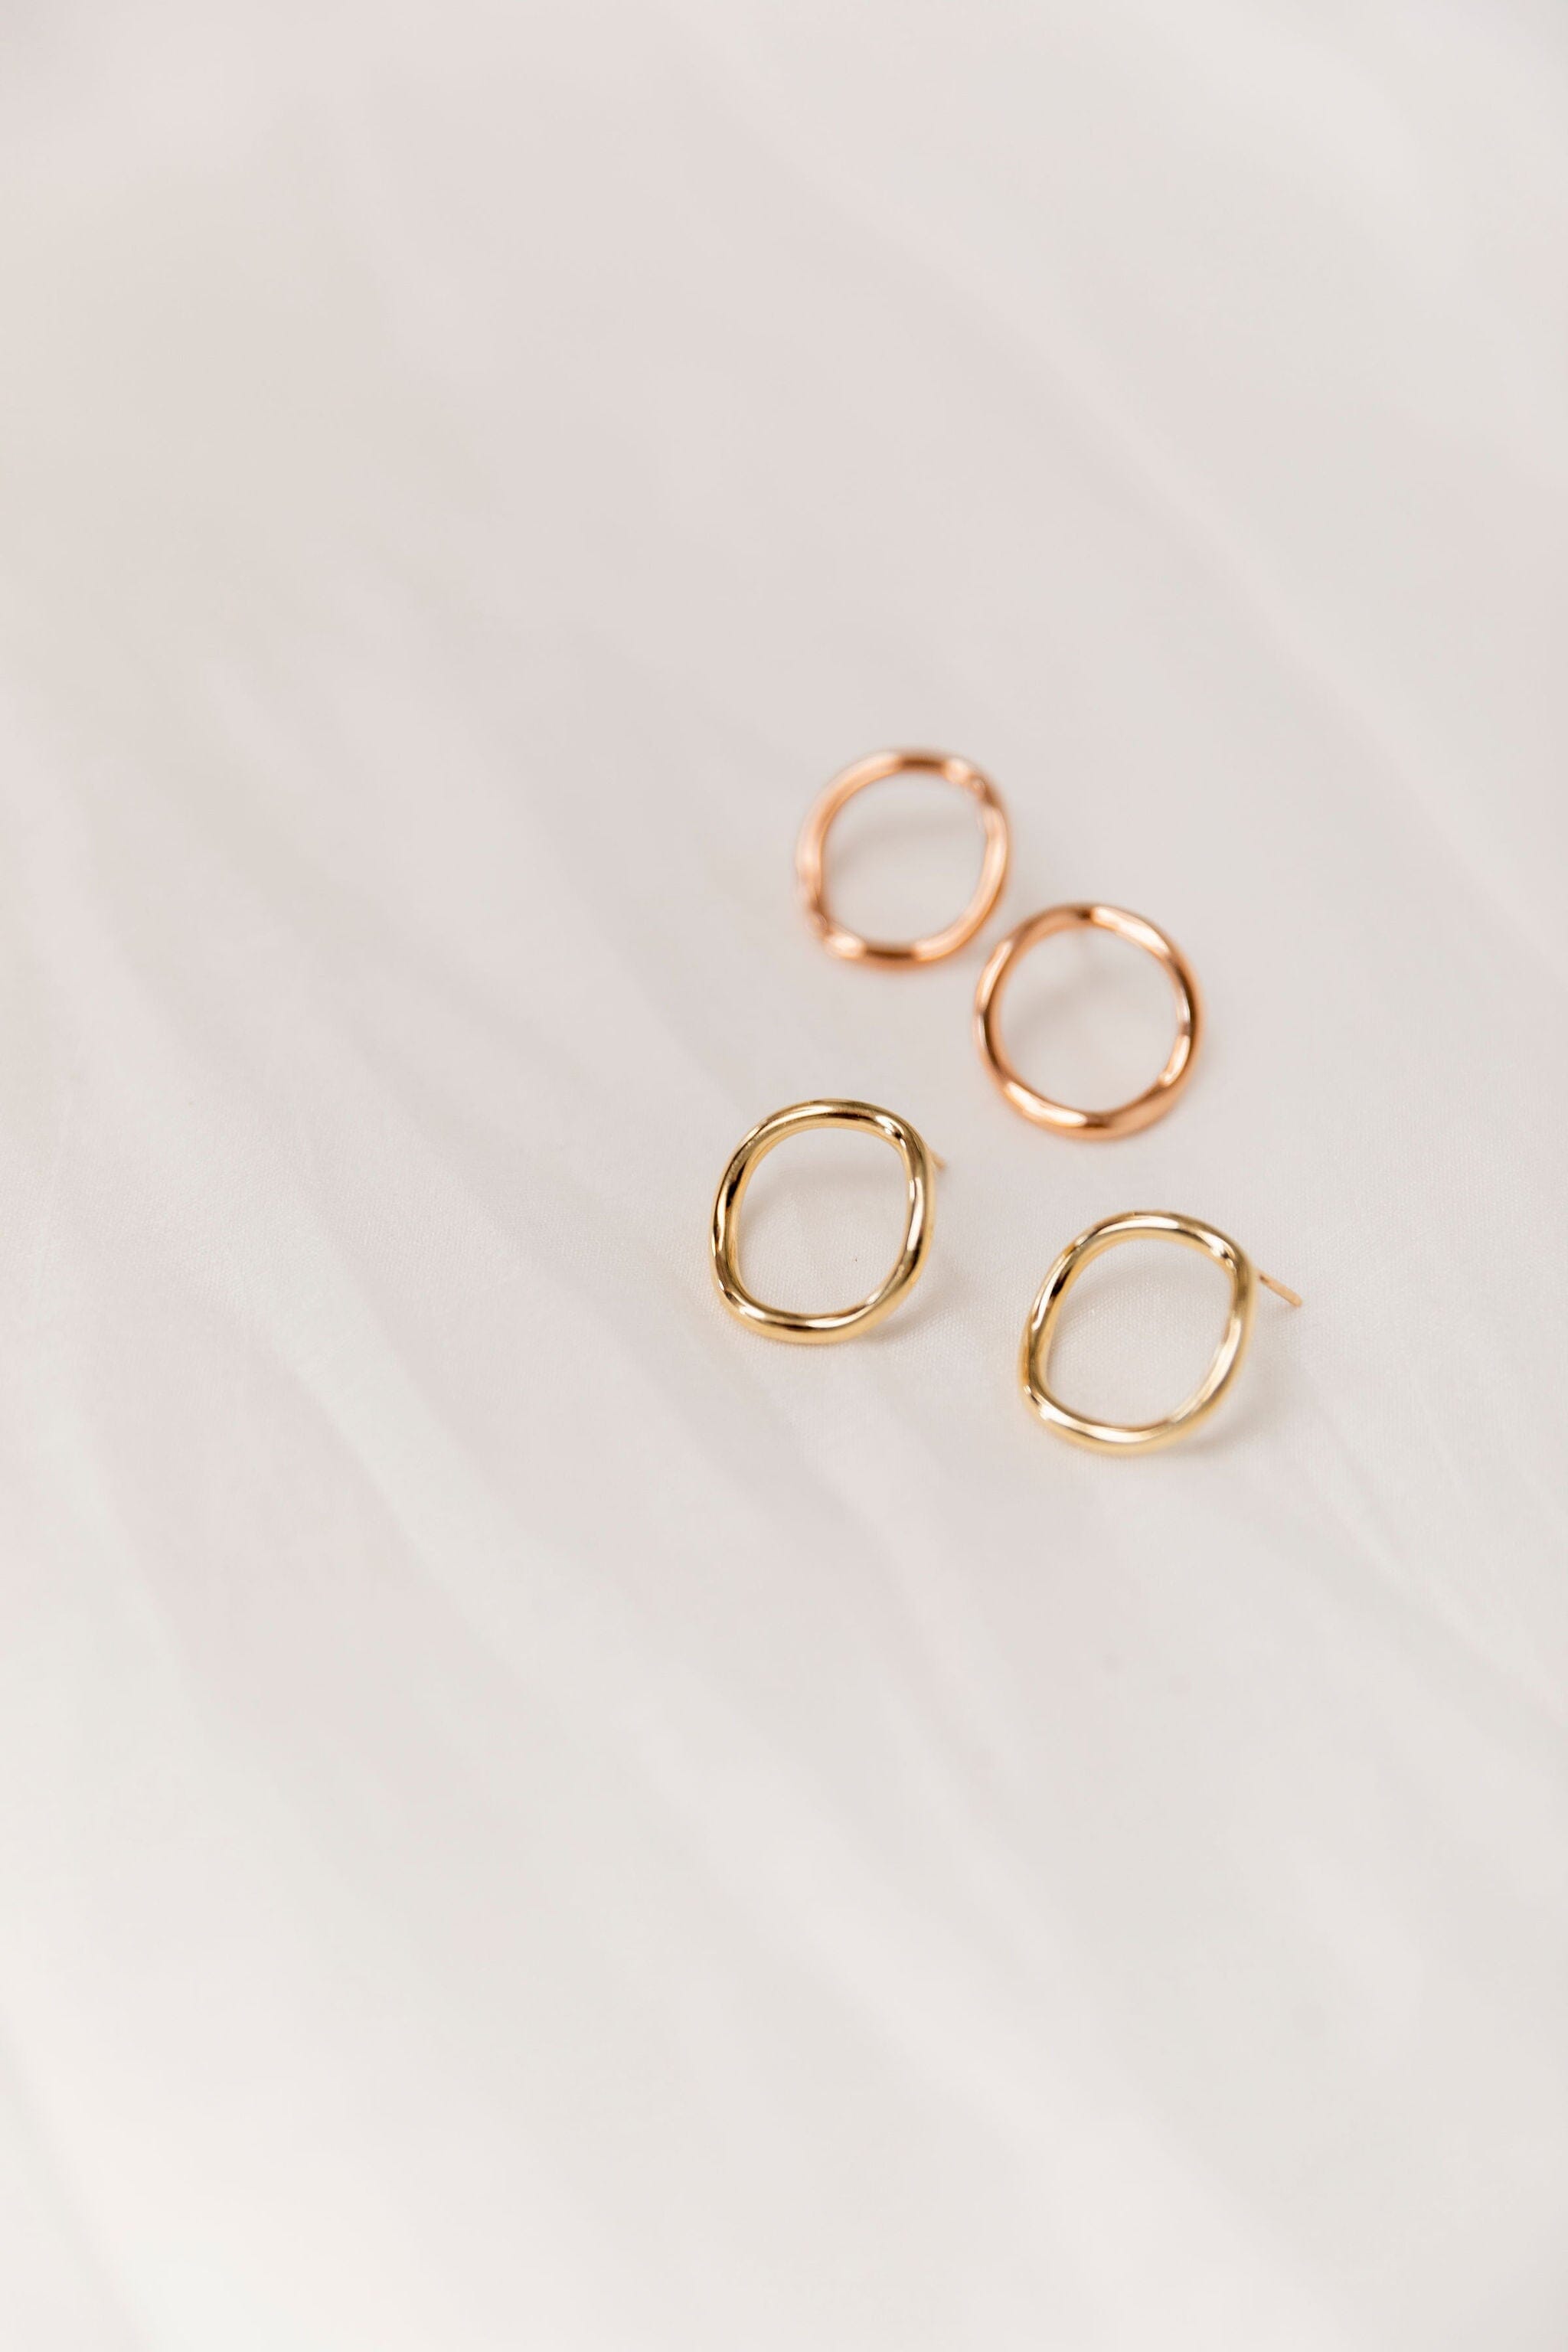 Golden Donut Wave Studs Earrings - BONDEYE JEWELRY ®